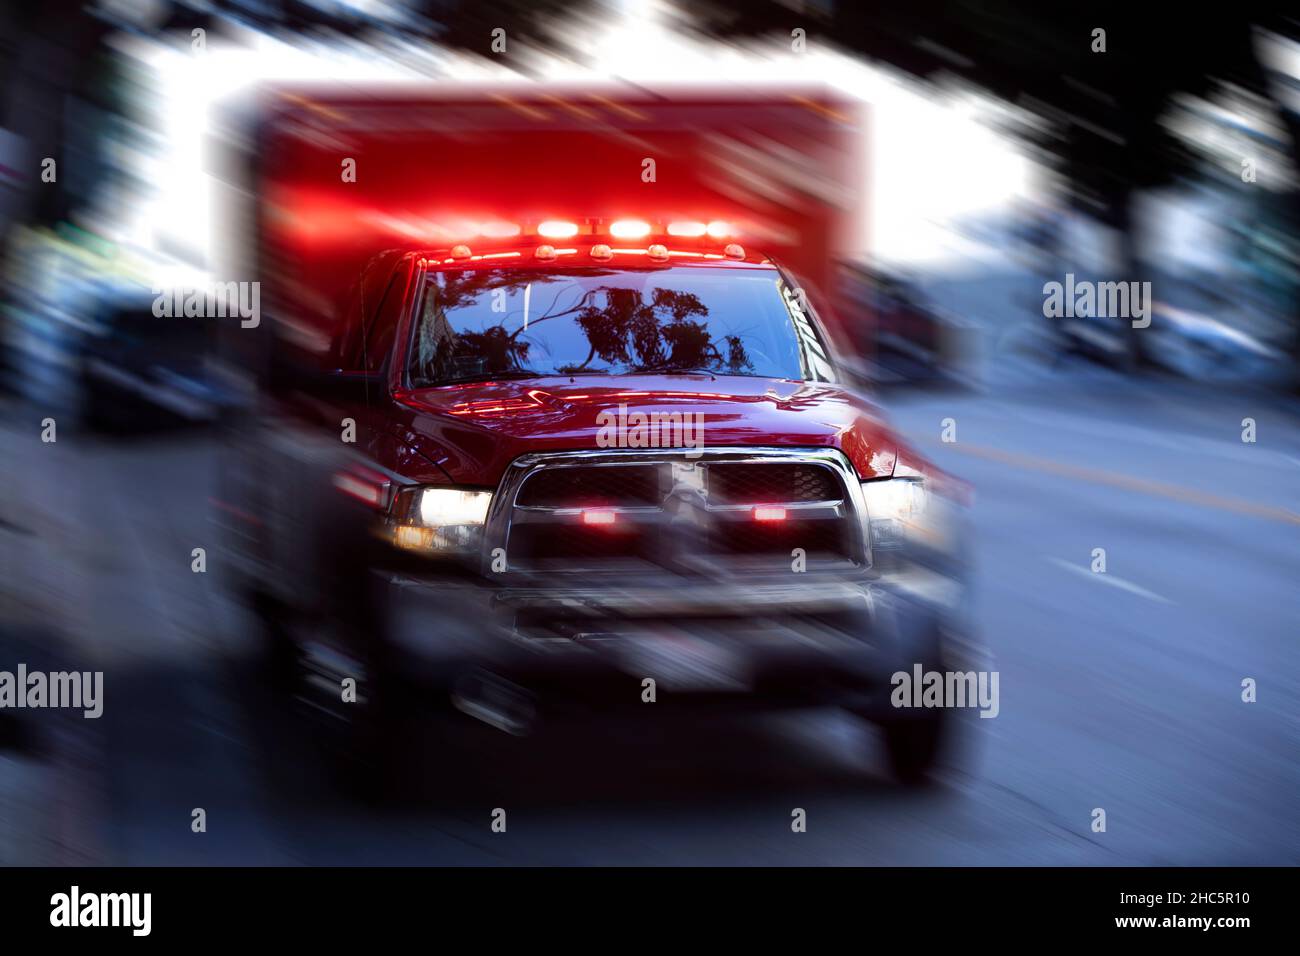 Une ambulance répond à la scène d'une urgence. Banque D'Images